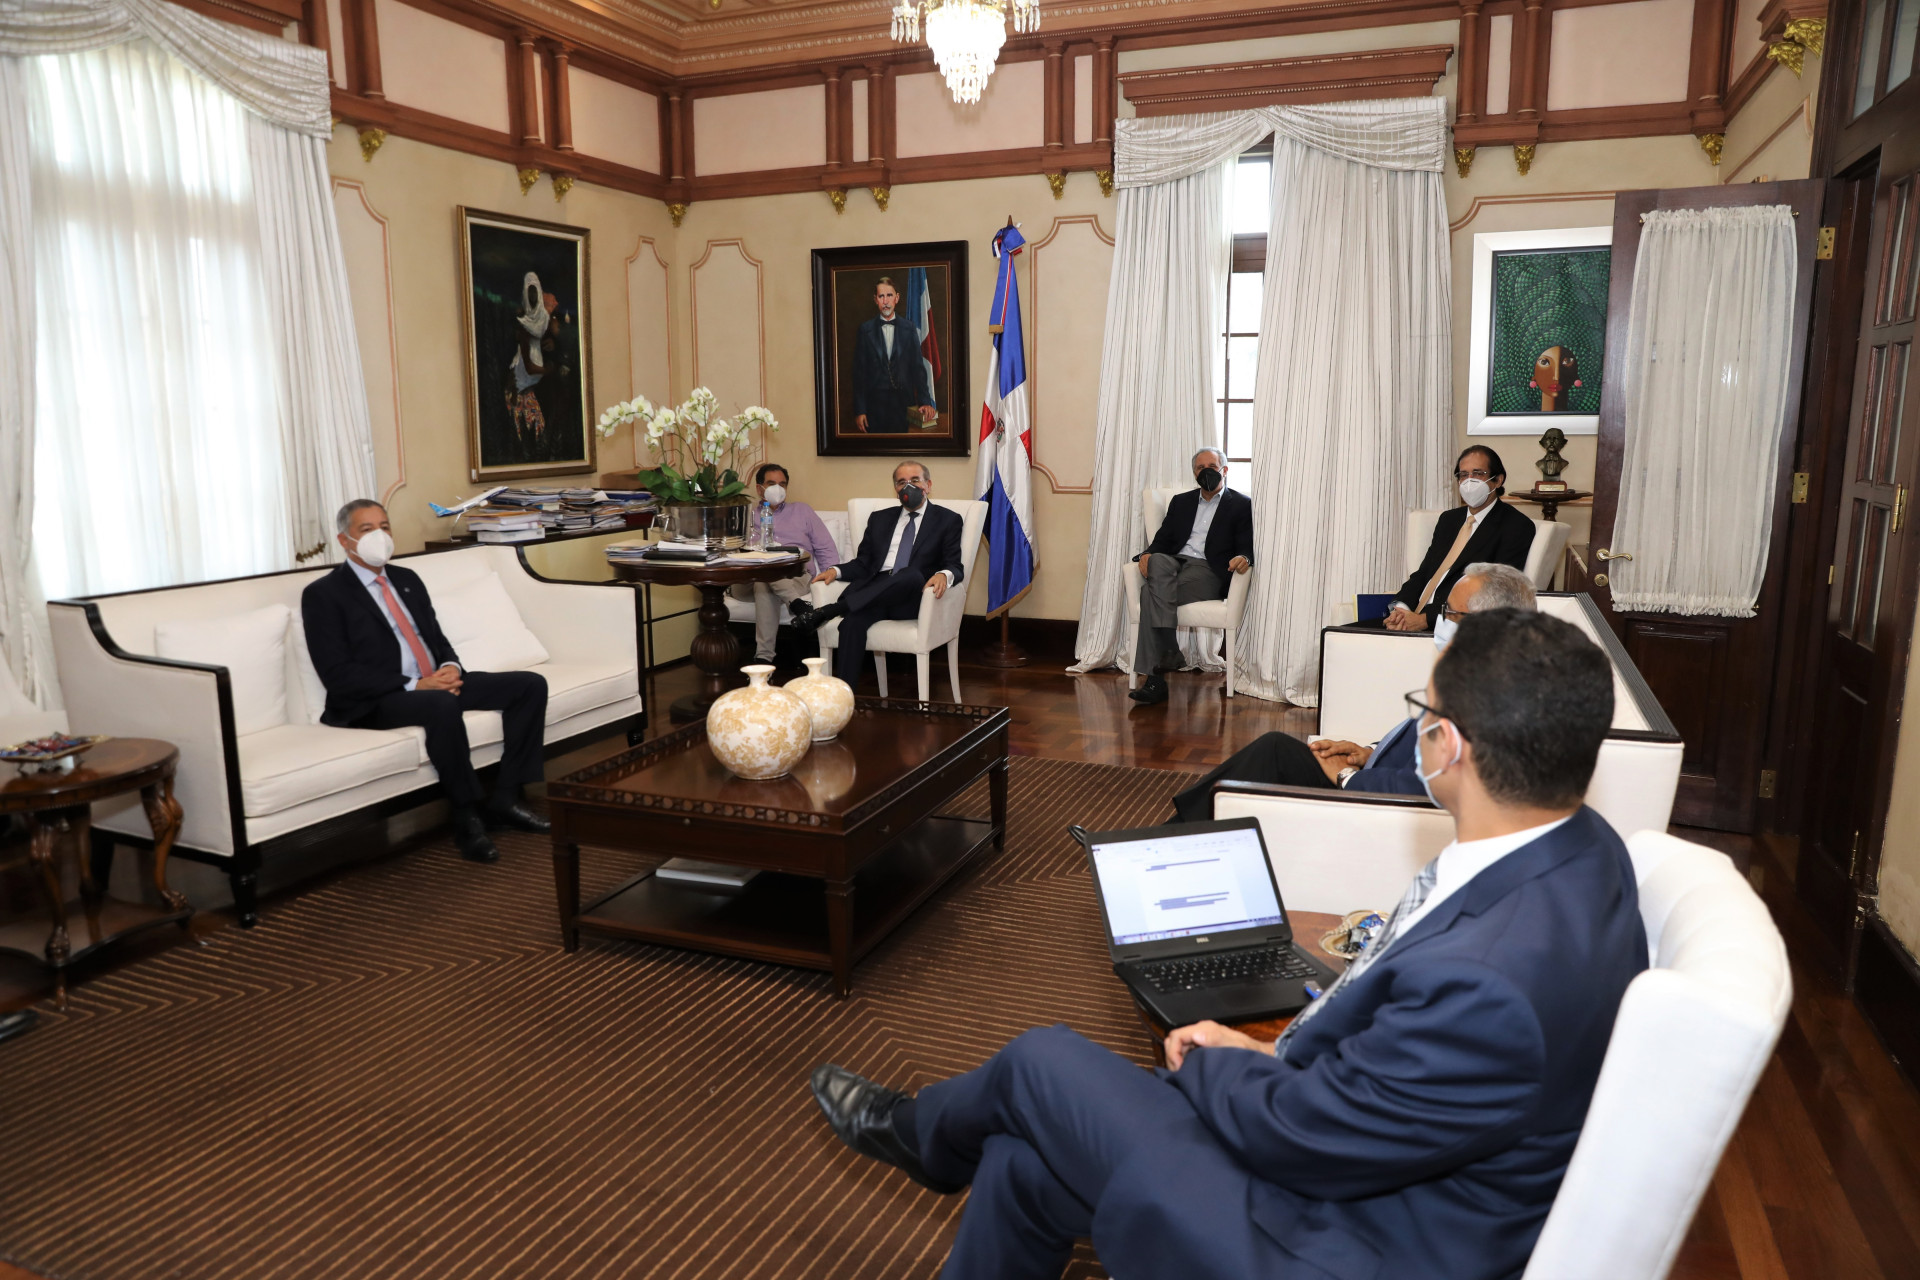 REPÚBLICA DOMINICANA: Presidente se reúne con ministros; pasa balance a planteamientos sectores sociales y a situación económica y sanitaria COVID-19